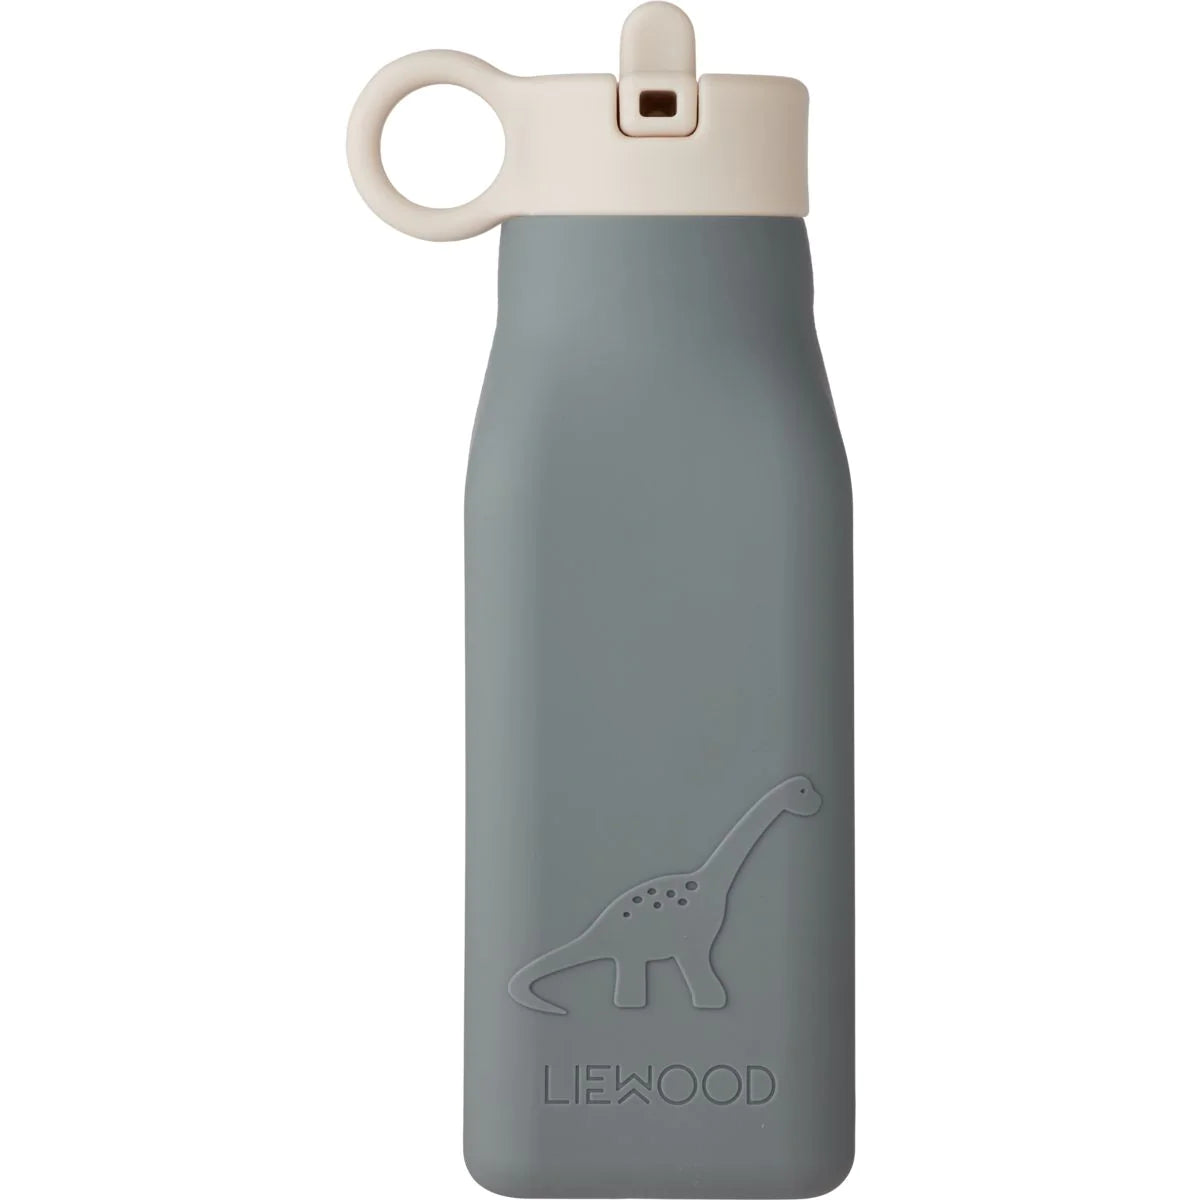 Liewood - Warren water bottle